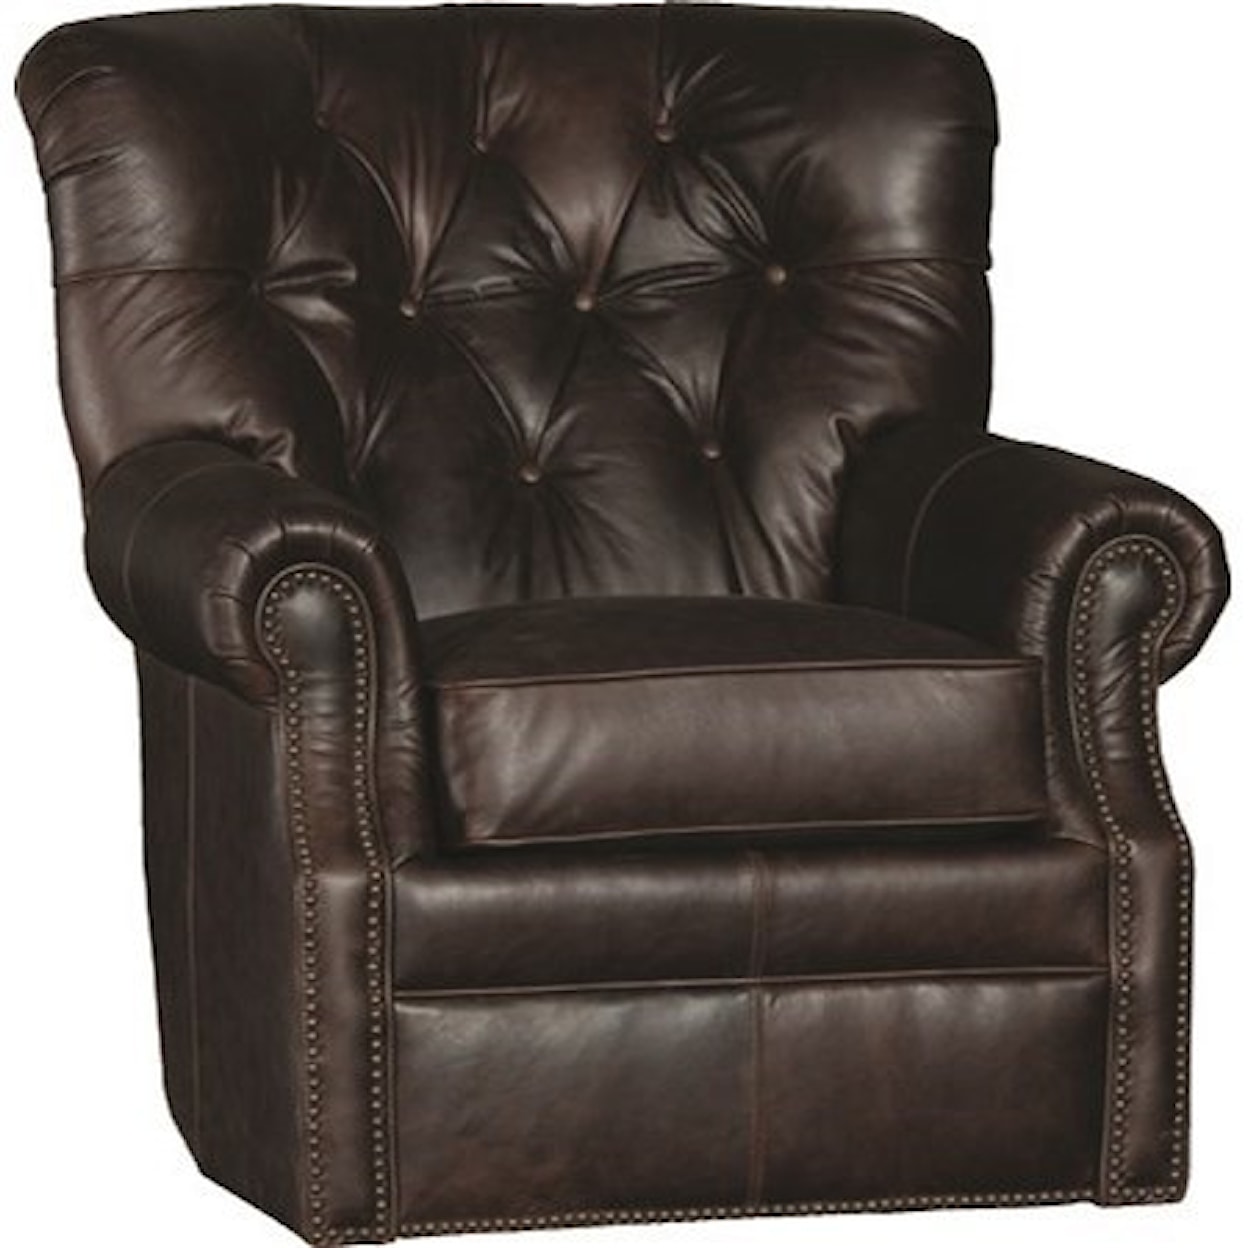 Mayo 2220 Swivel Chair